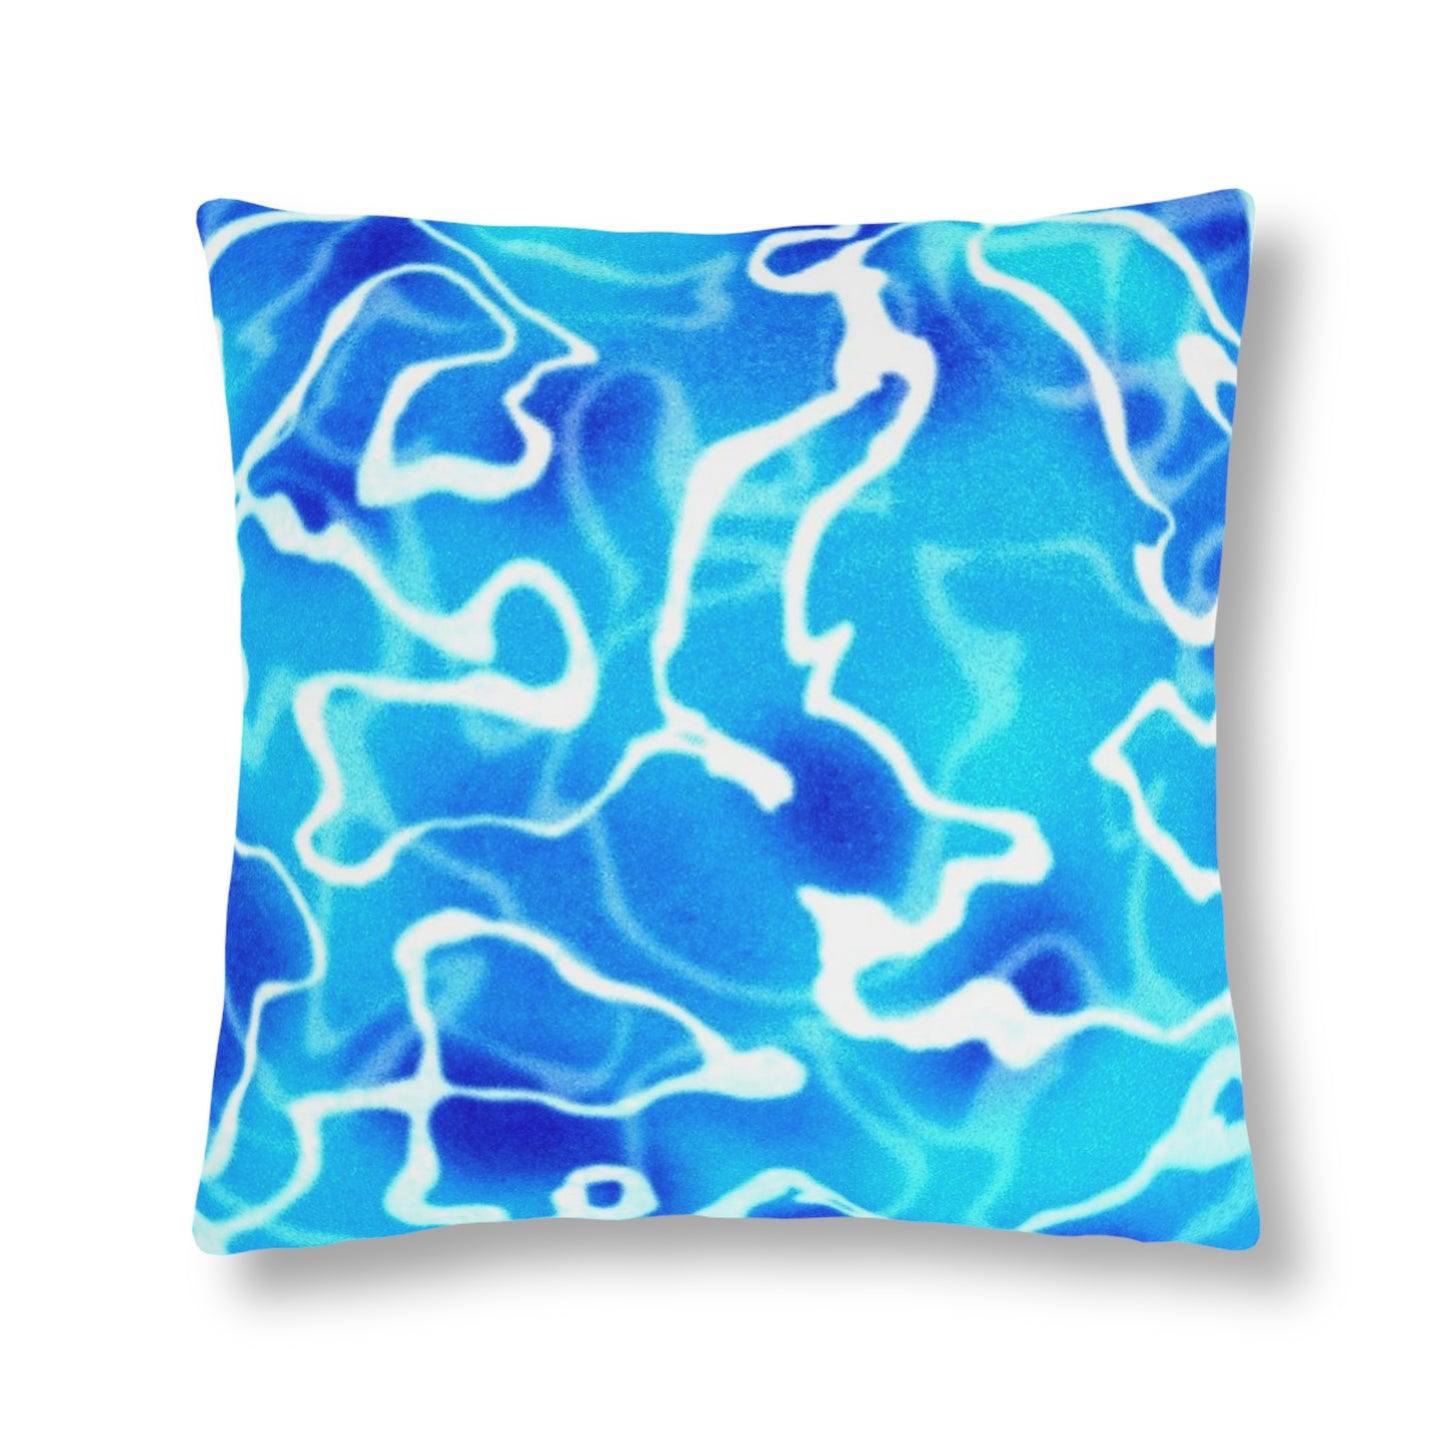 Water blue Waterproof Pillows